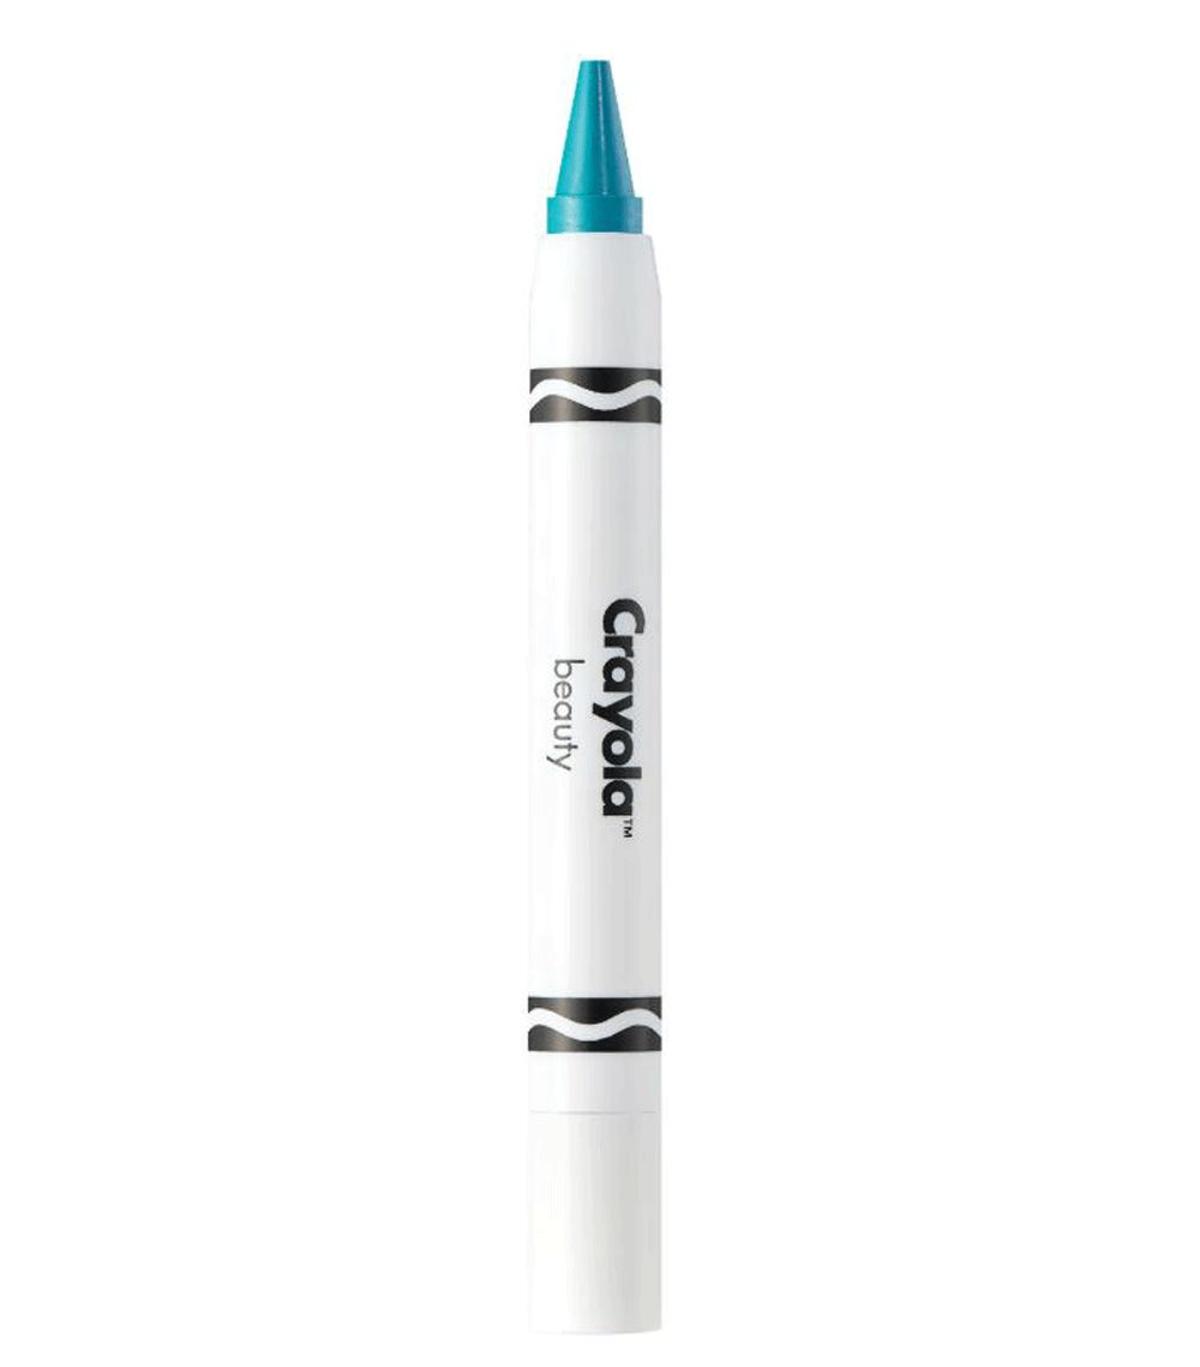 Sombra en stick de Crayola, a la venta en Sephora (Precio: 12,95 euros)